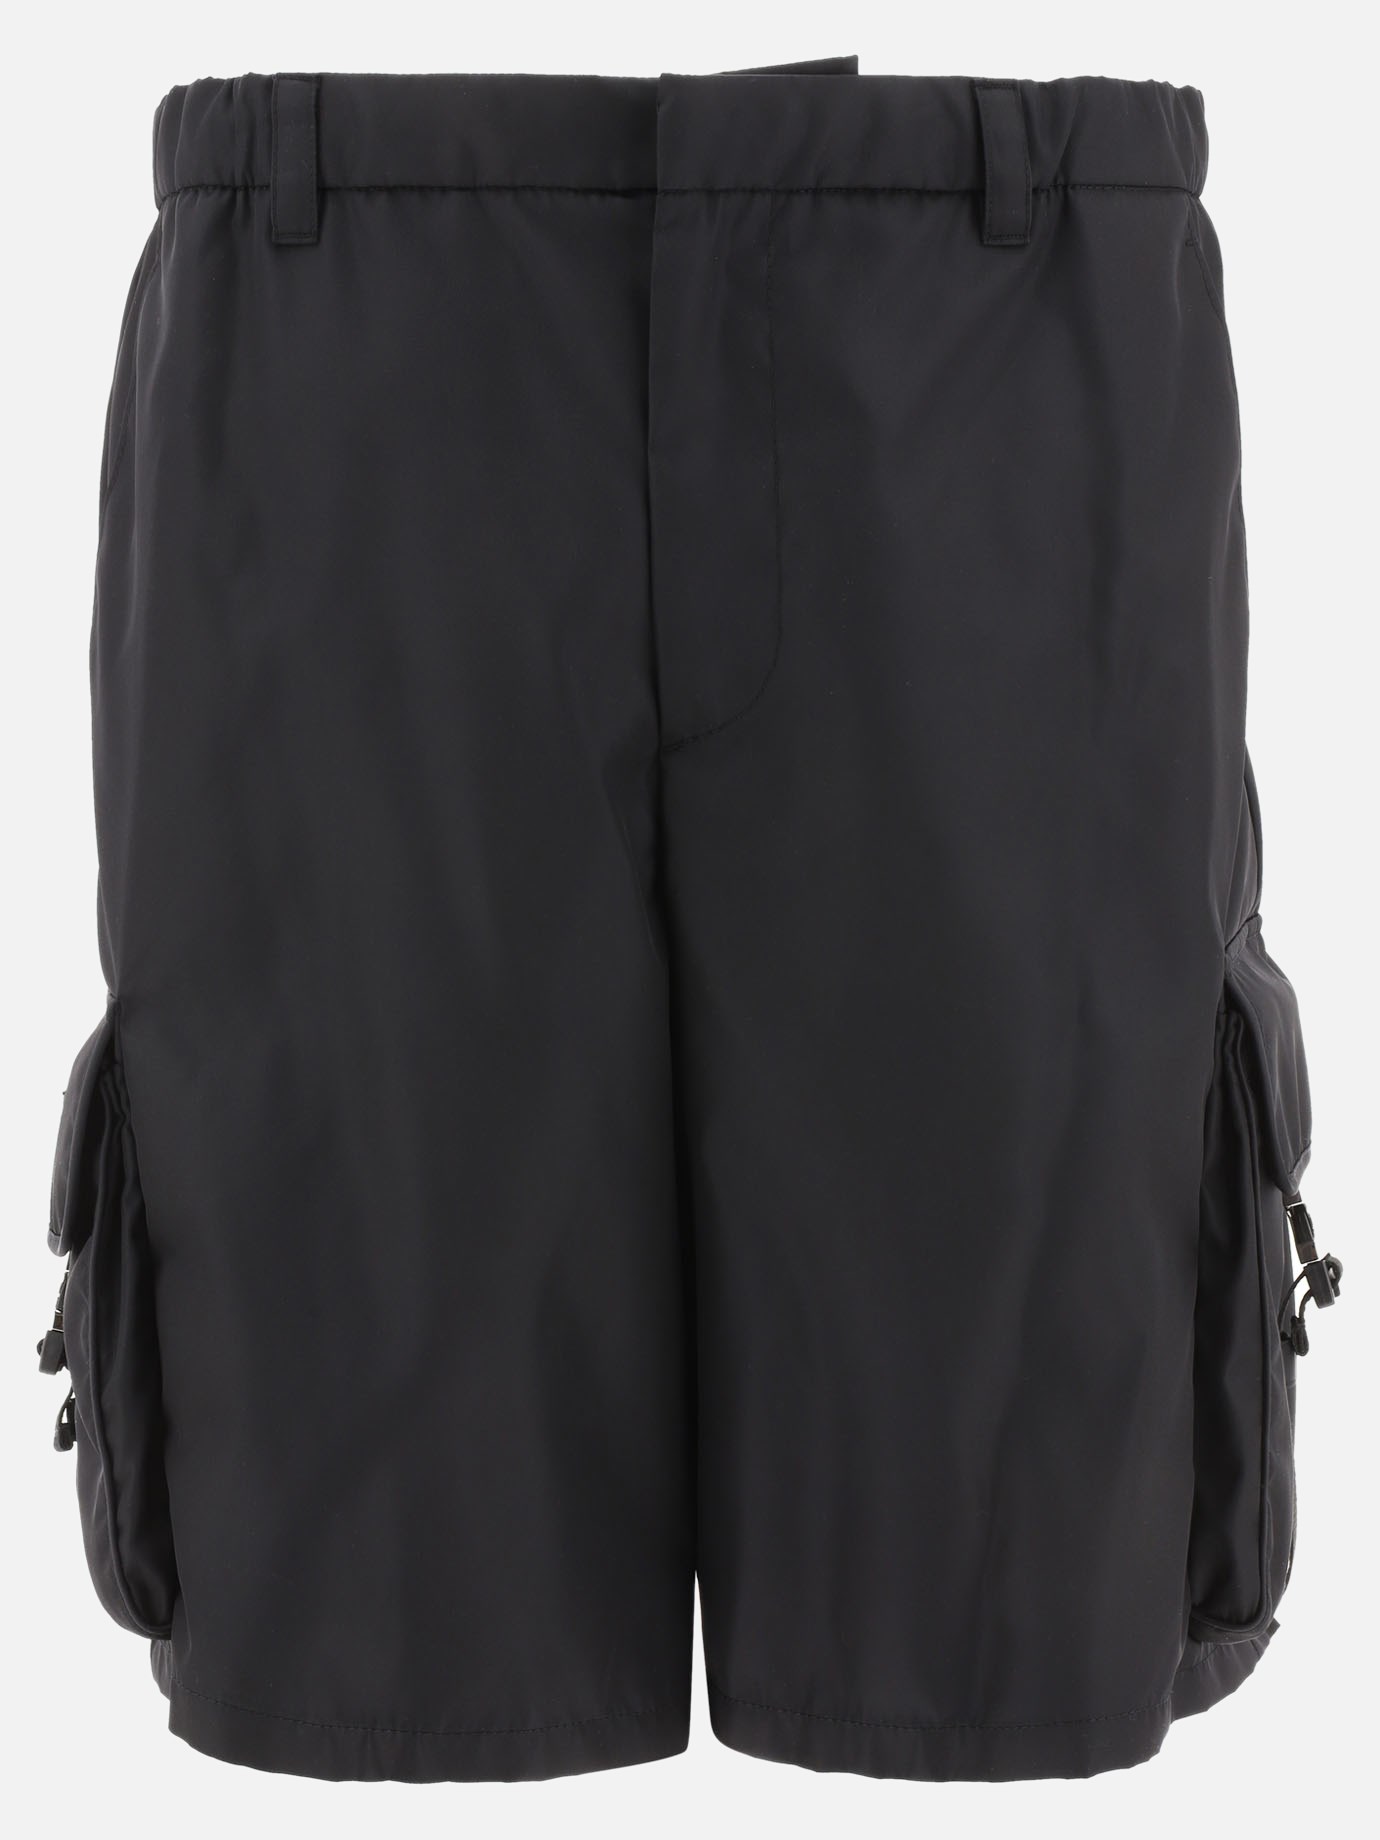  Re-Nylon  cargo shorts by Prada